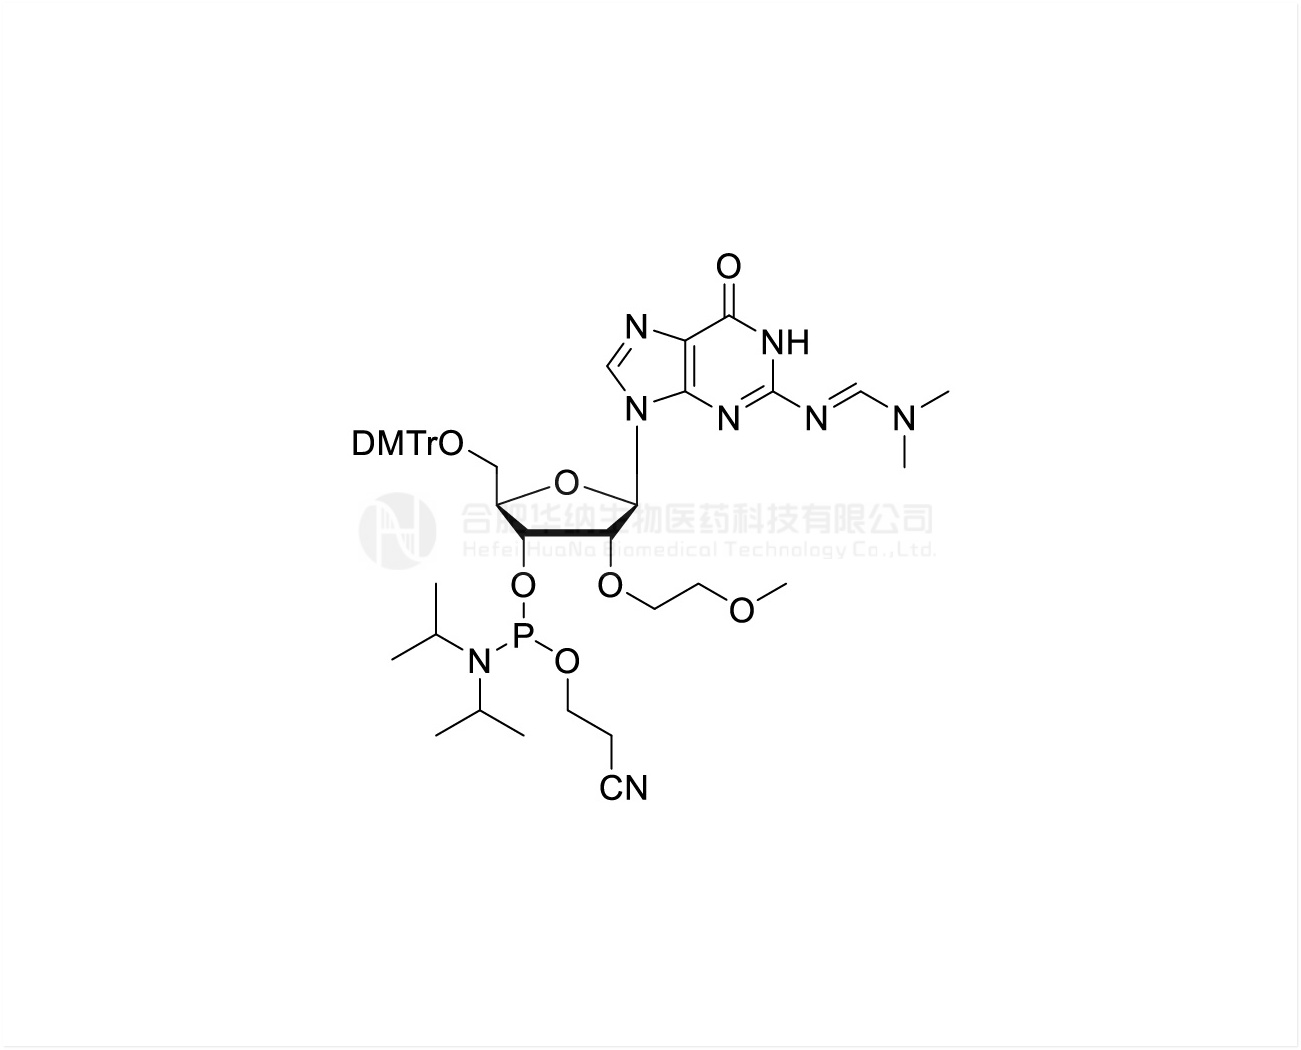 DMTr-2'-O-MOE-rG(dmf)-3'-CE-Phosphoramidite